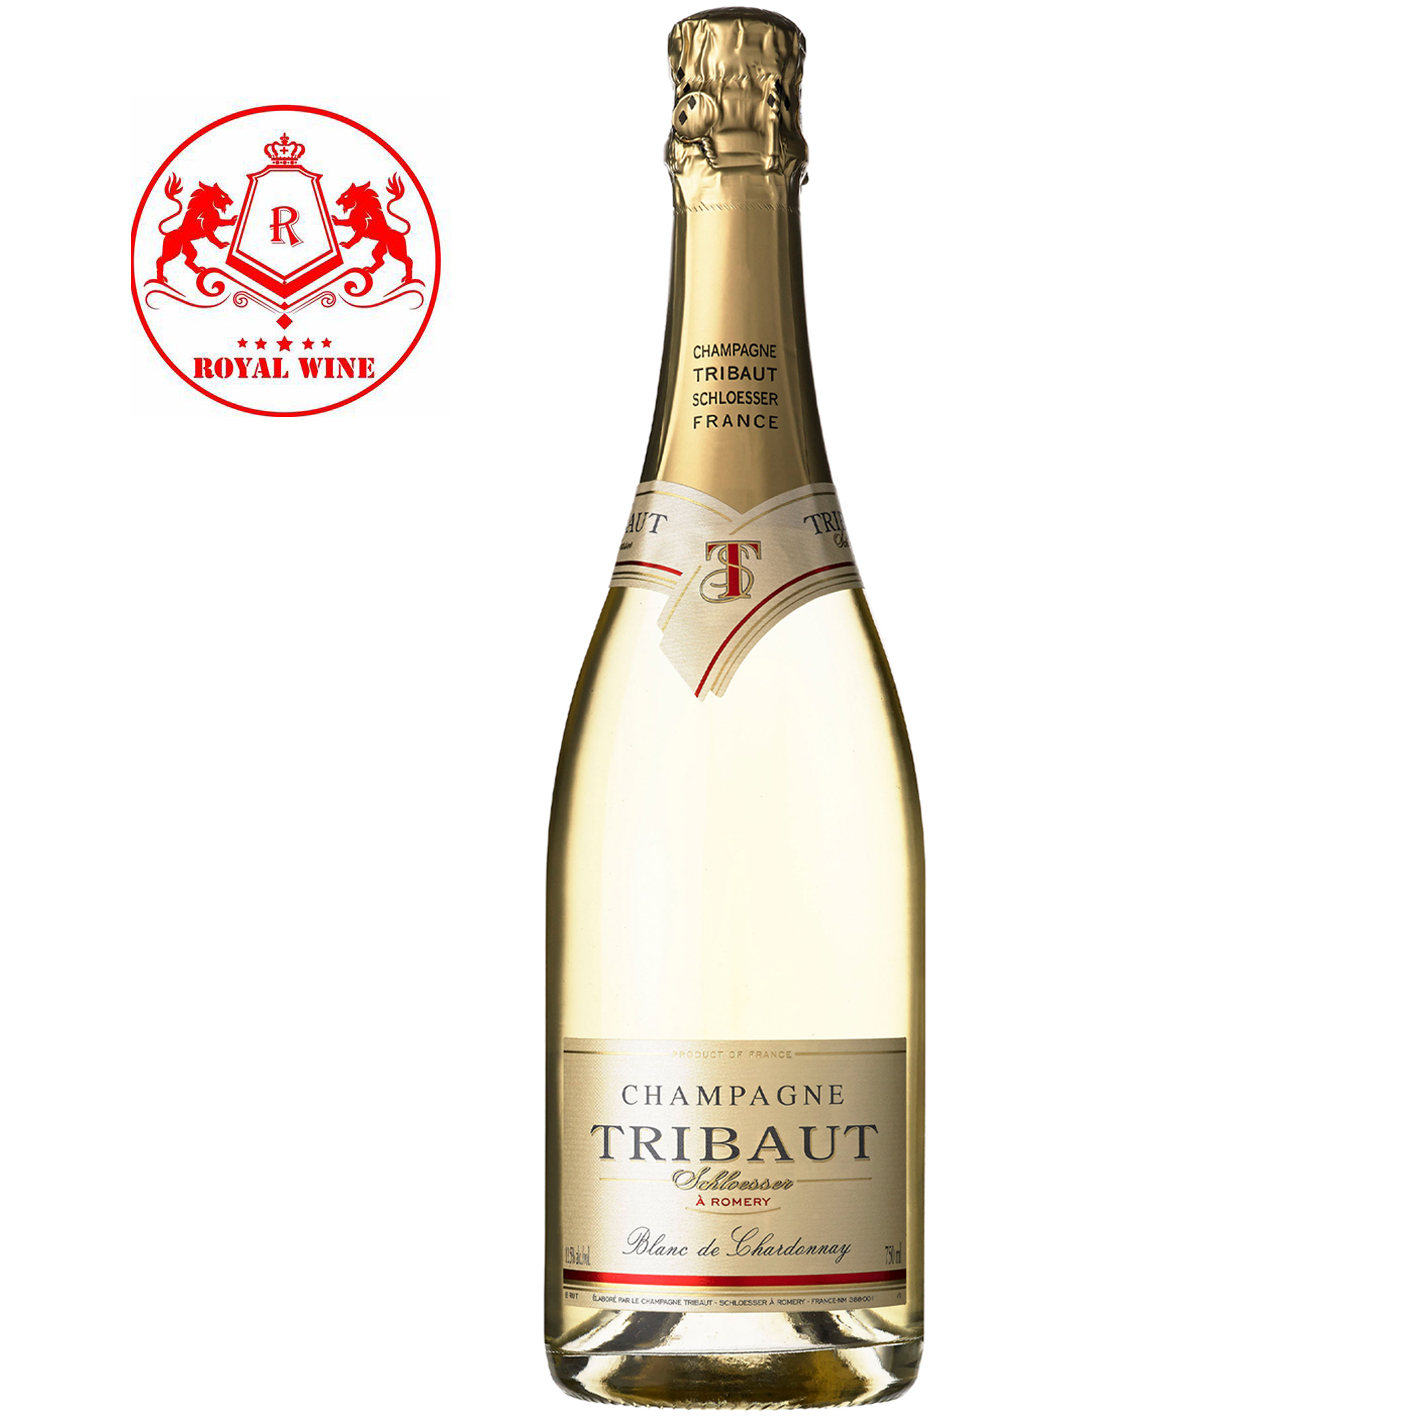 Champagne TRIBAUT Schloesser Blanc De Chardonnay